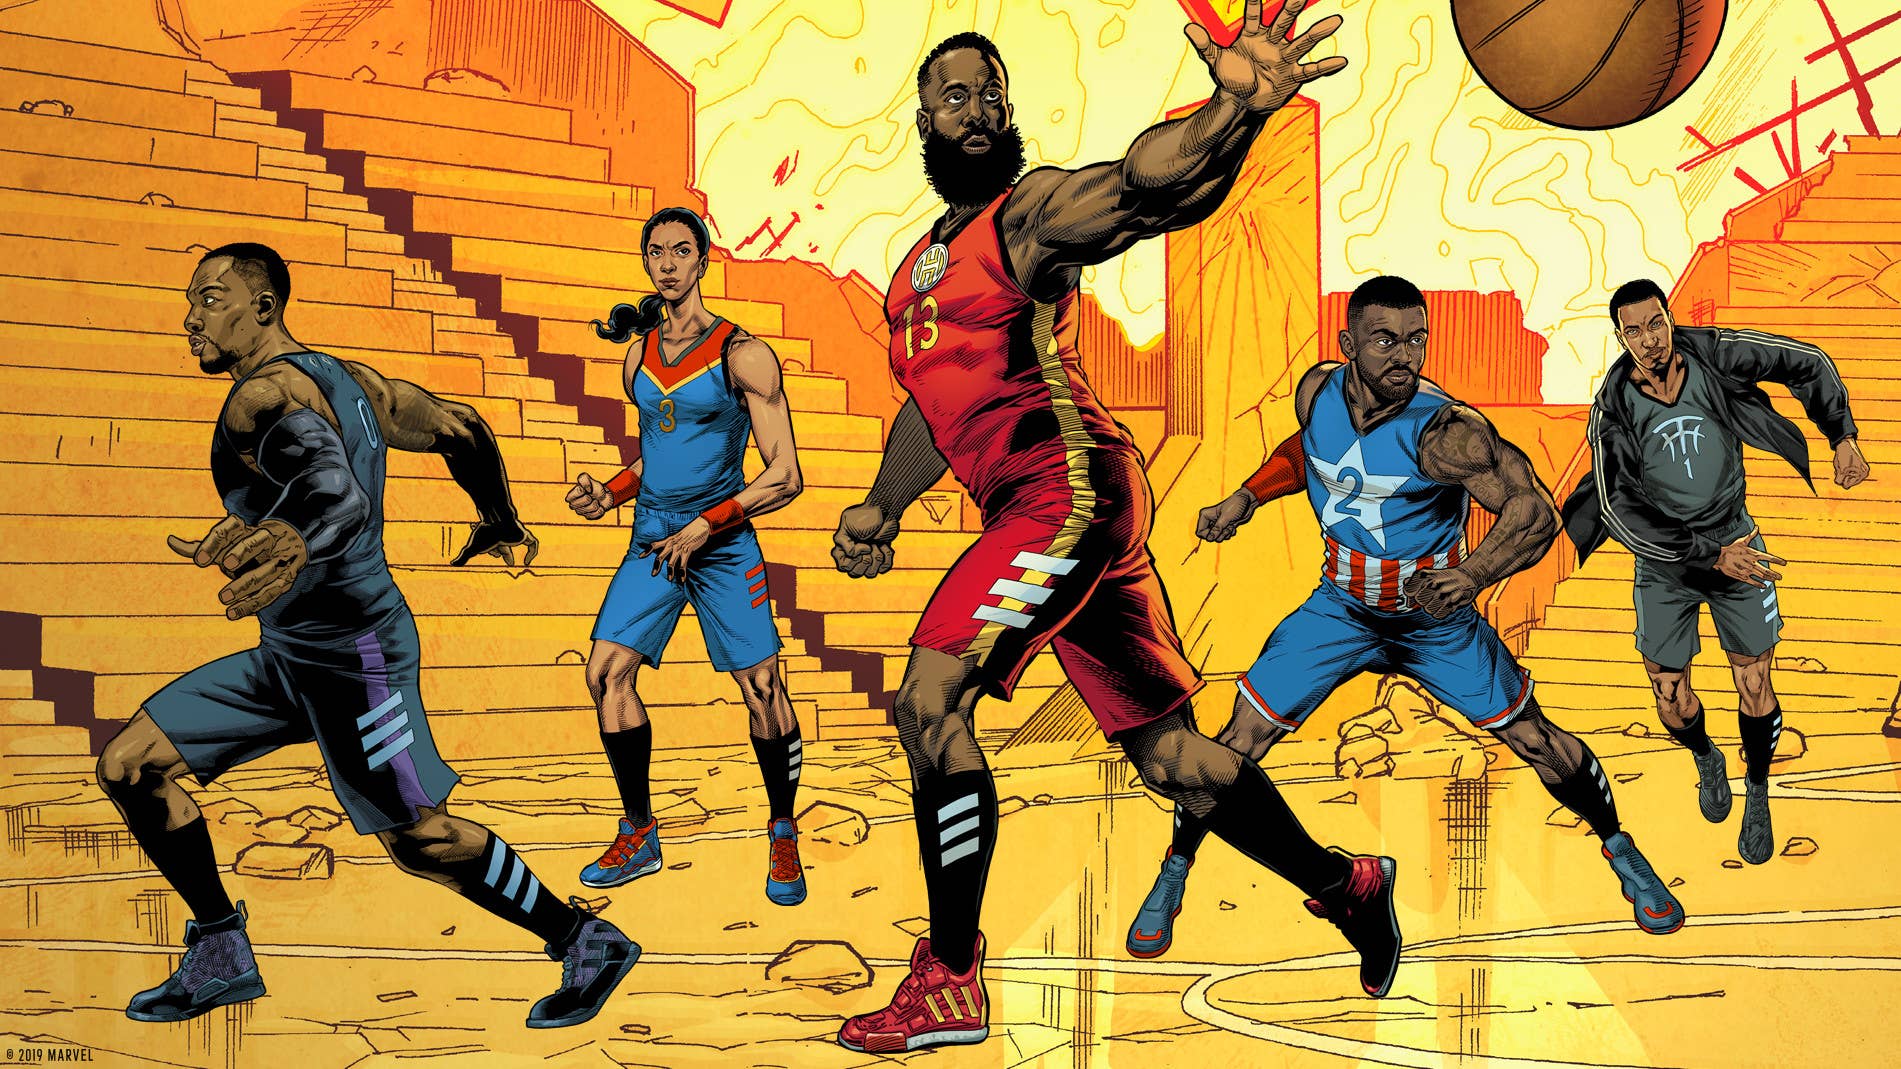 Marvel x Adidas Basketball 'Heroes Among Us' Collection